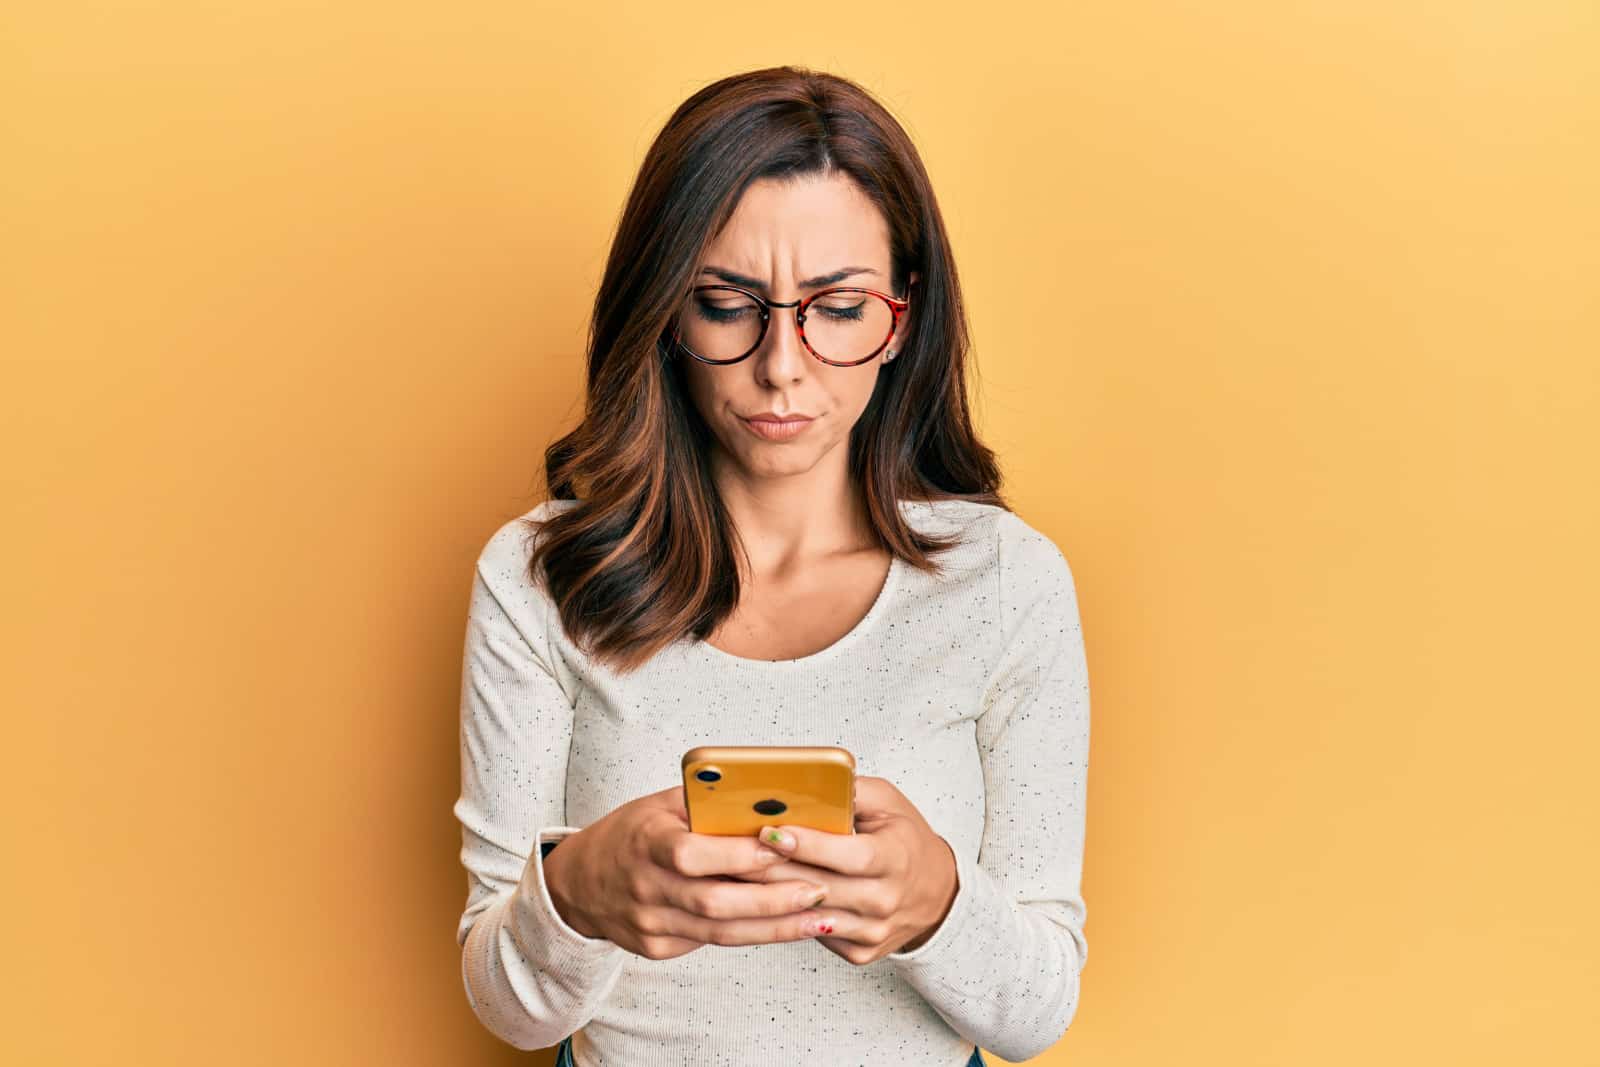 femme brune tape au téléphone avec une expression confuse, fond orange